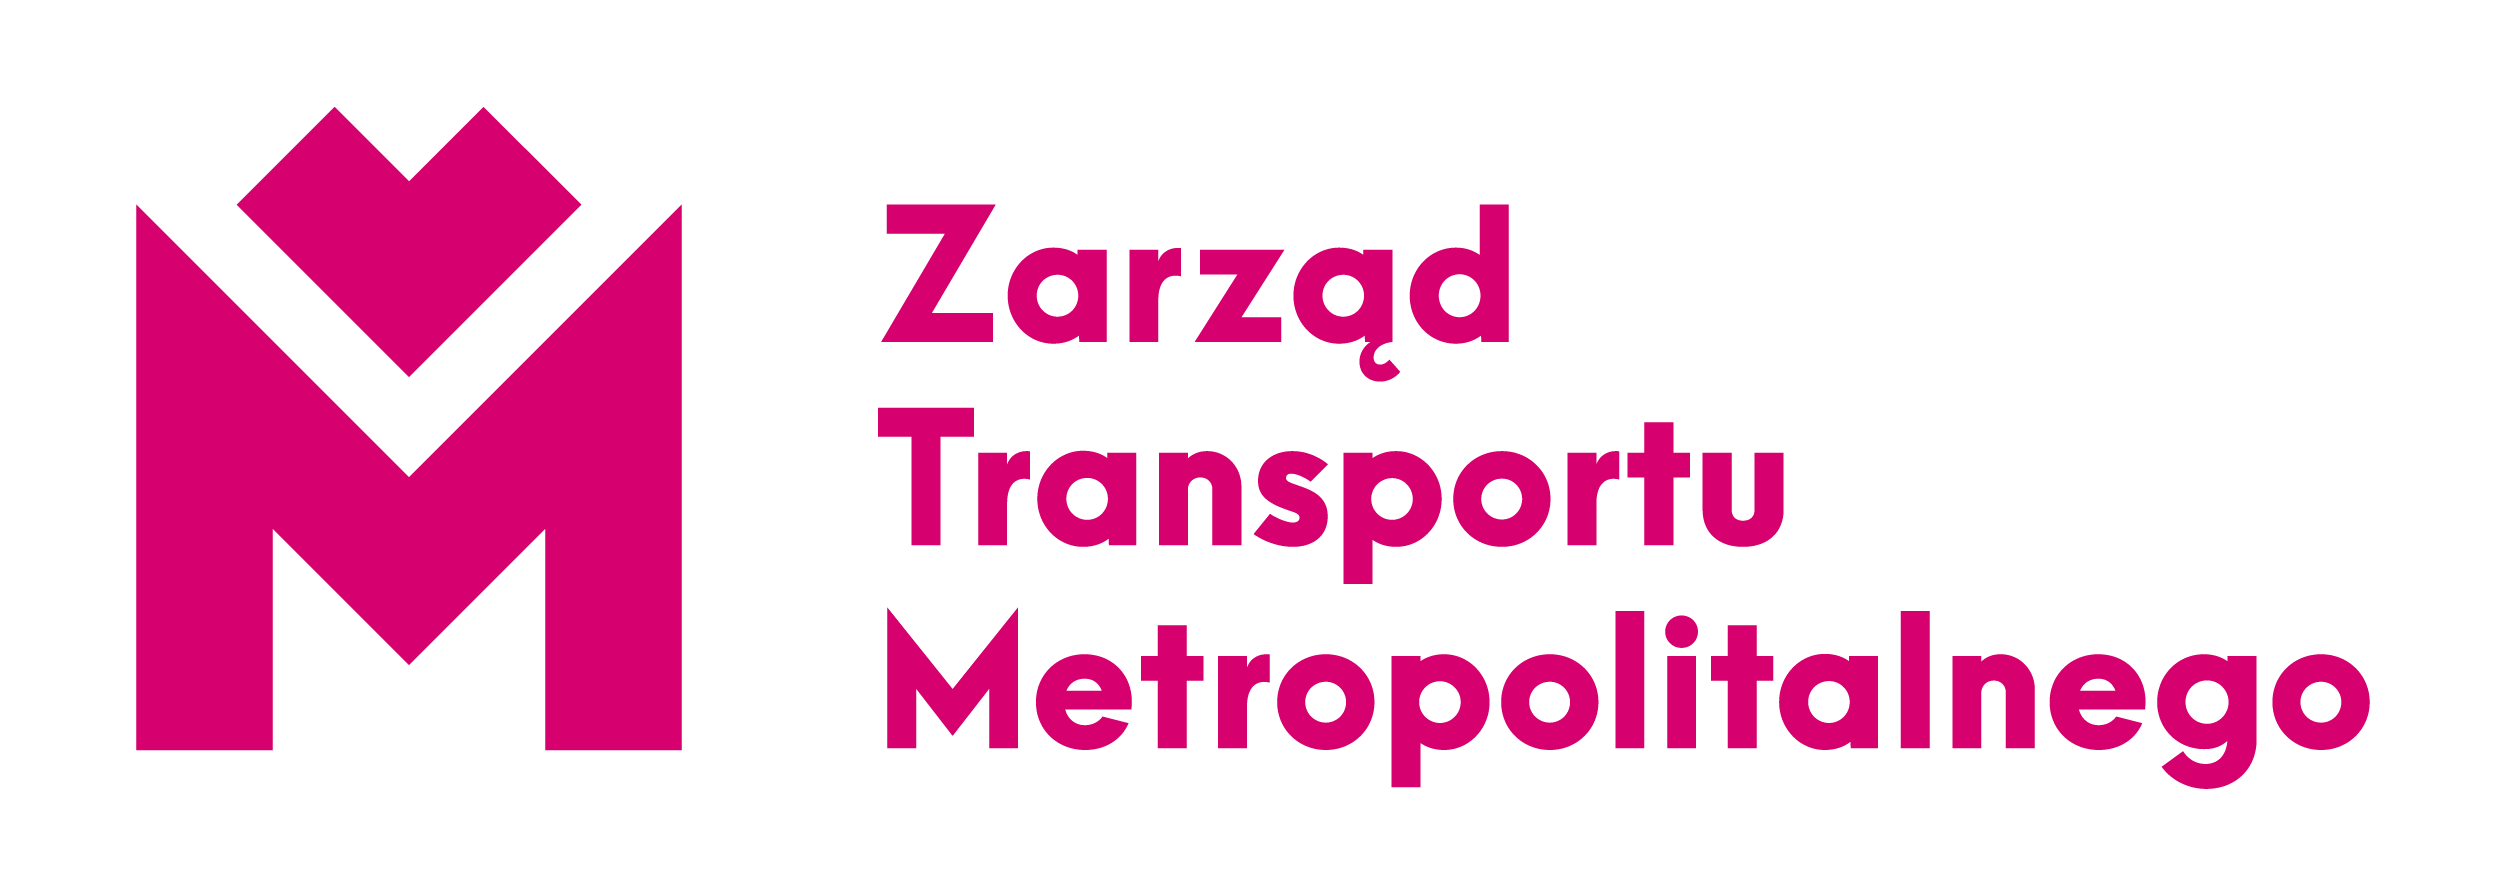 Zarząd Transportu Metropolitalnego 